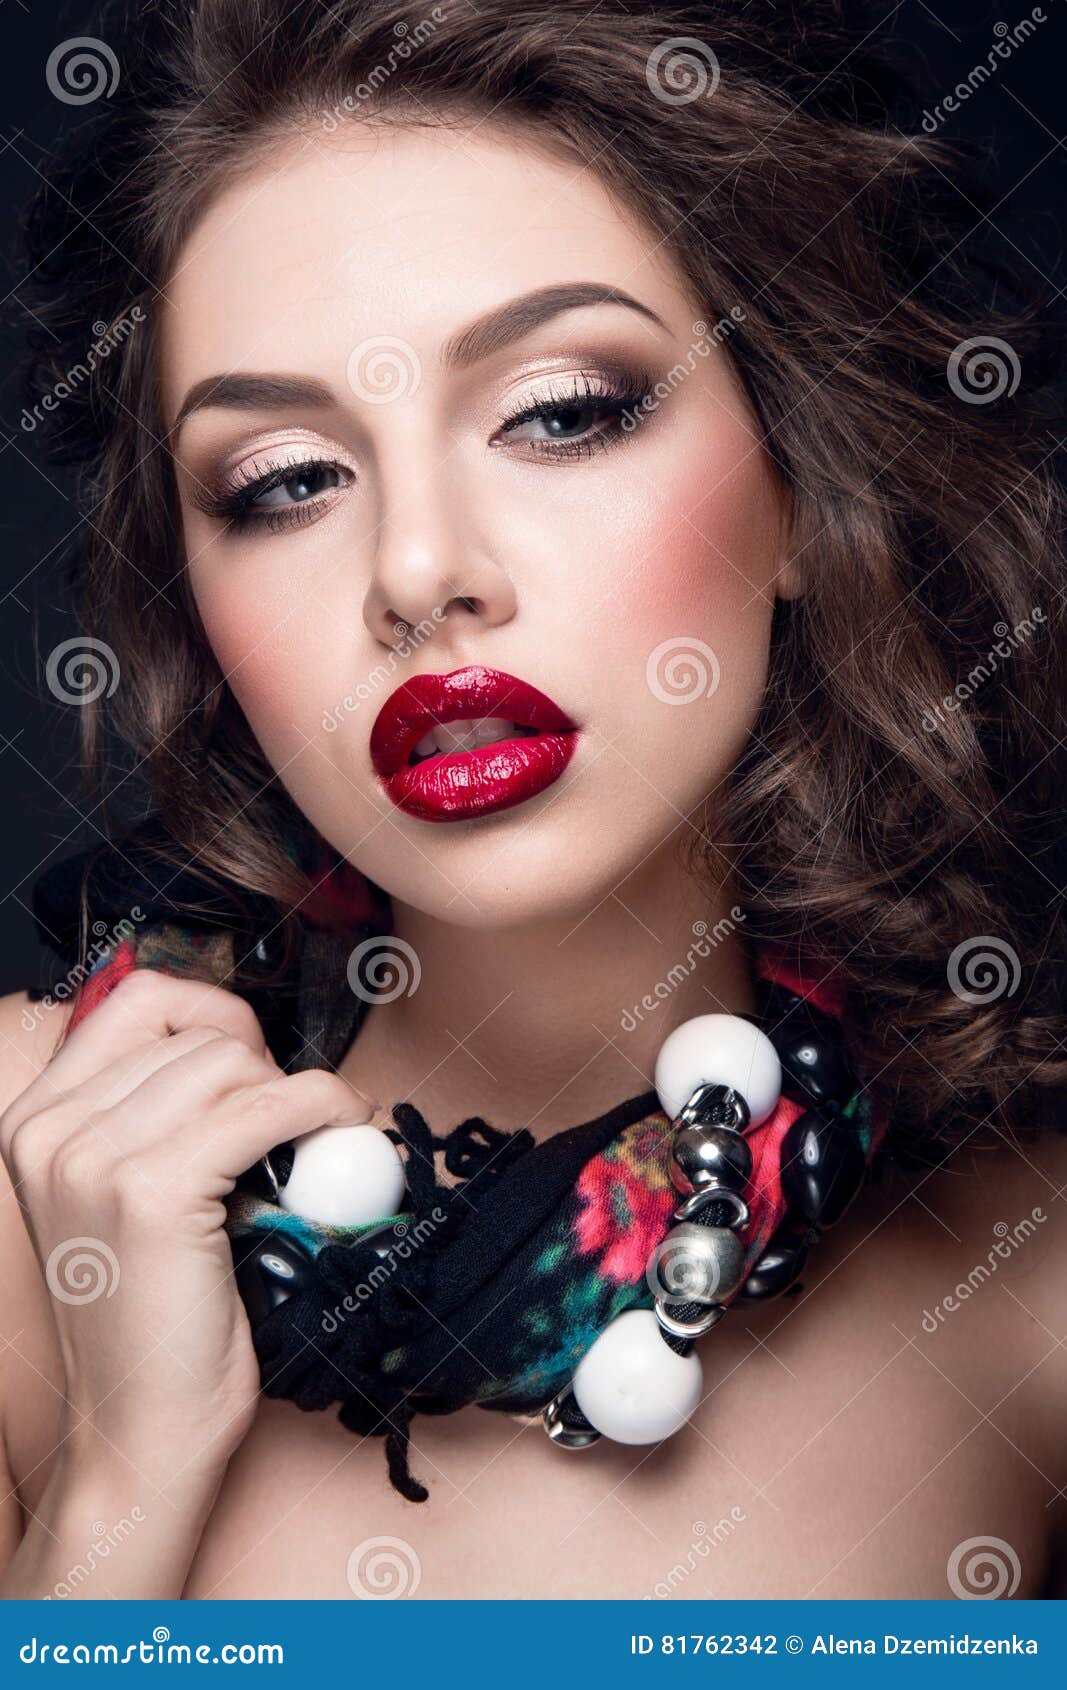 https://thumbs.dreamstime.com/z/beautiful-portrait-woman-red-lips-jewelry-neck-russian-beauty-81762342.jpg